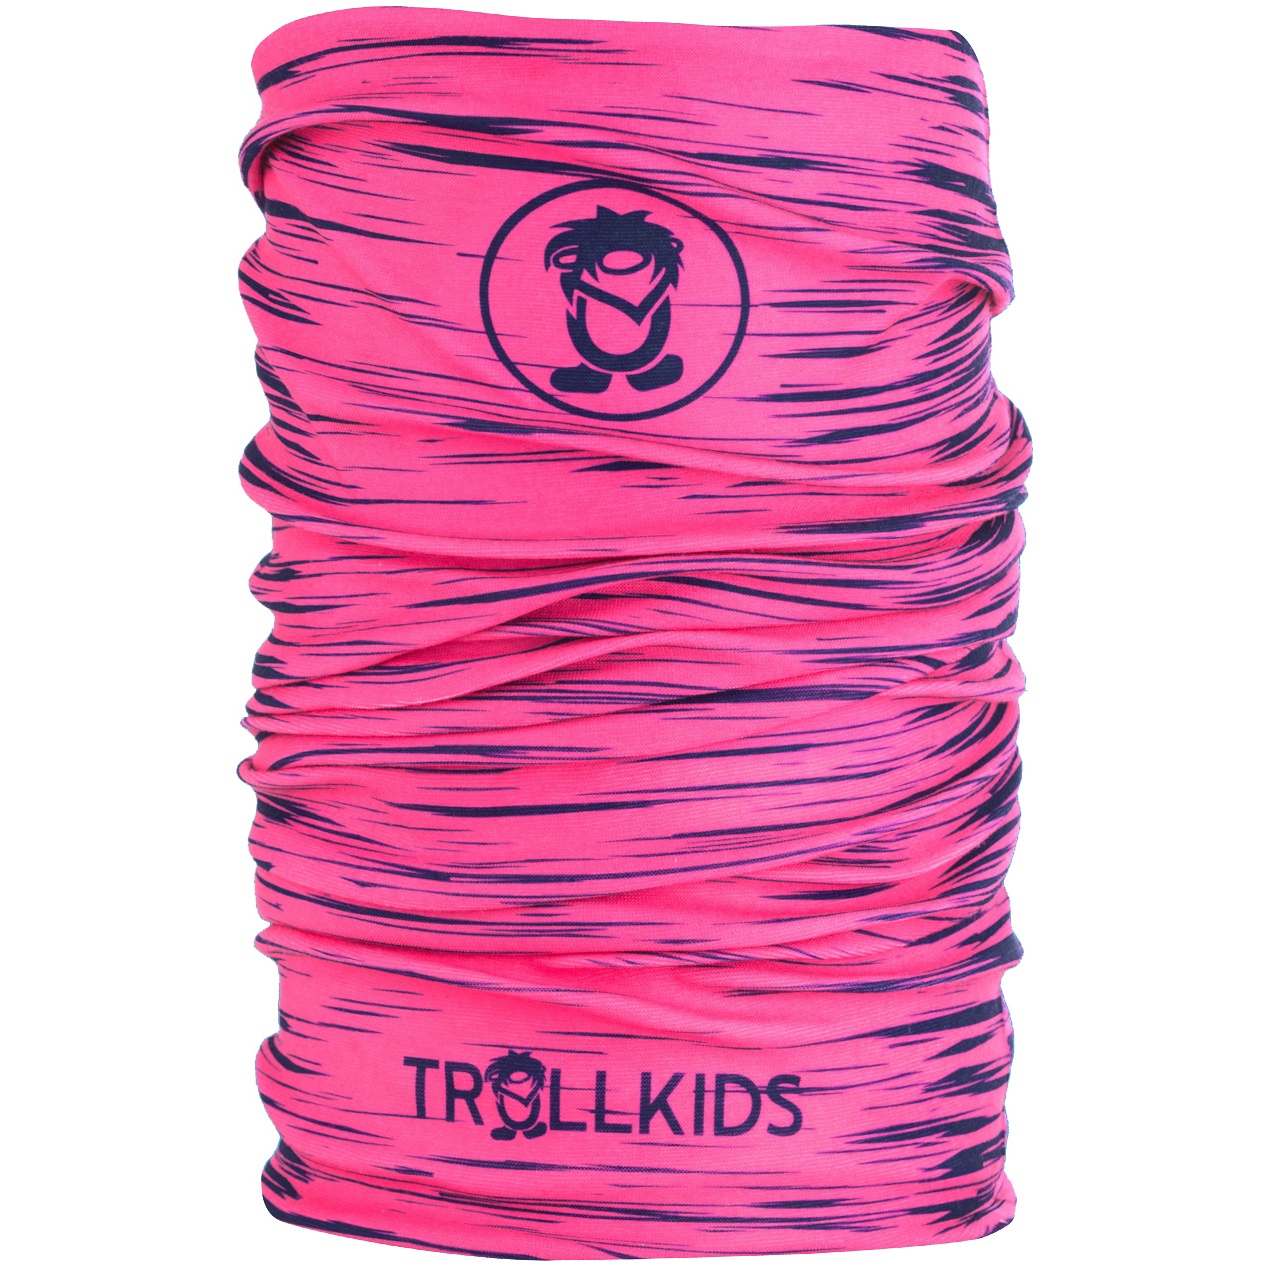 Productfoto van Trollkids Troll Kids Multitube - Navy/Magenta